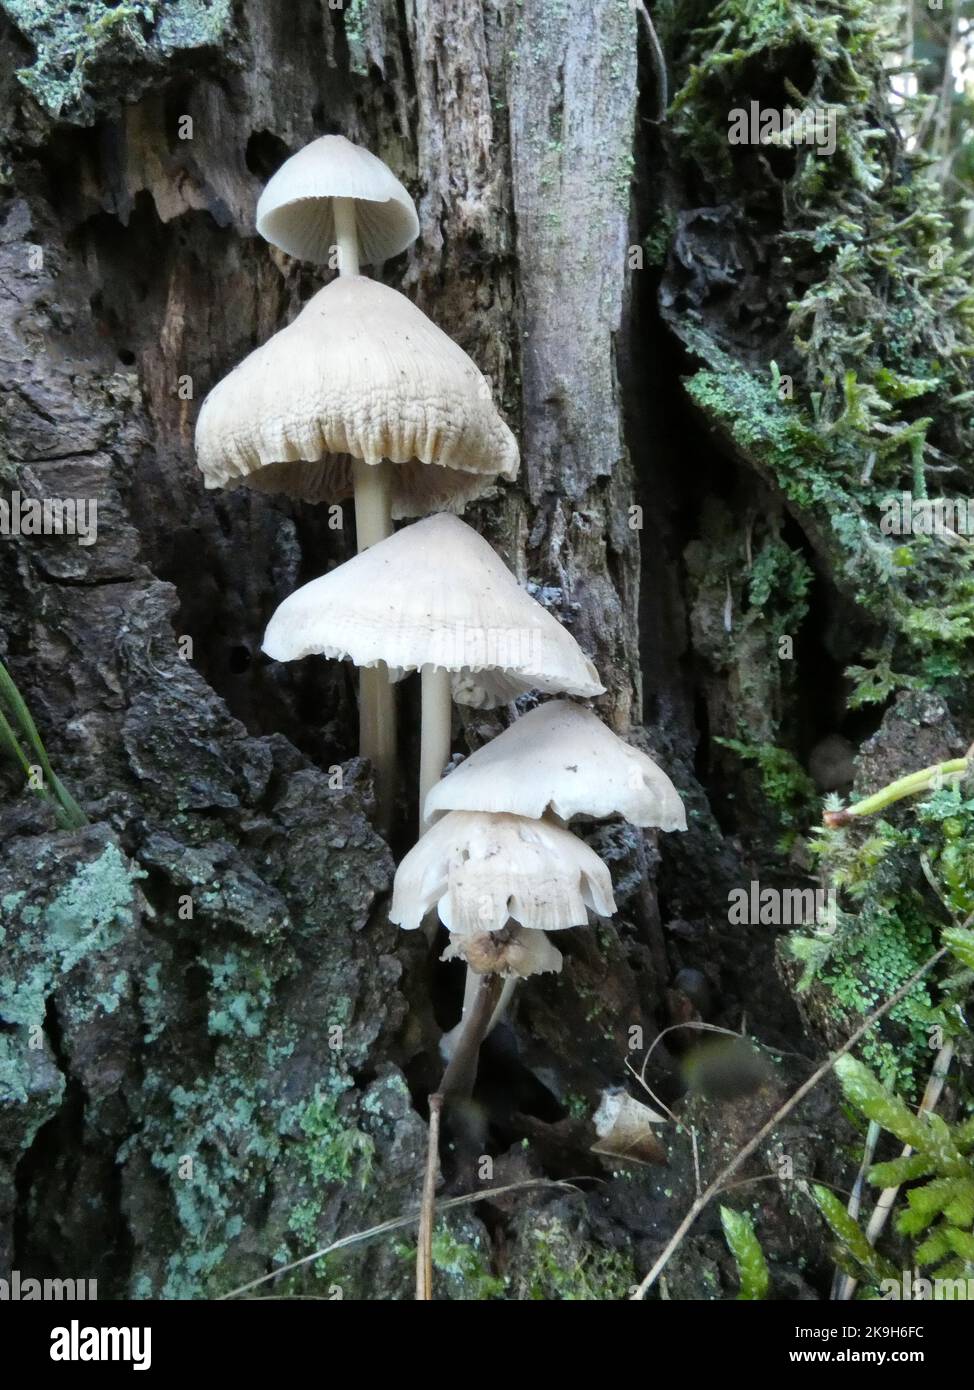 Mycena galericulata, Haube, Haube mycena, gewöhnliche mycena oder rosig-Kiemenfee-Helm sind die Namen dieser niedlichen Gruppe von Pilzen, die auf einer t wachsen Stockfoto